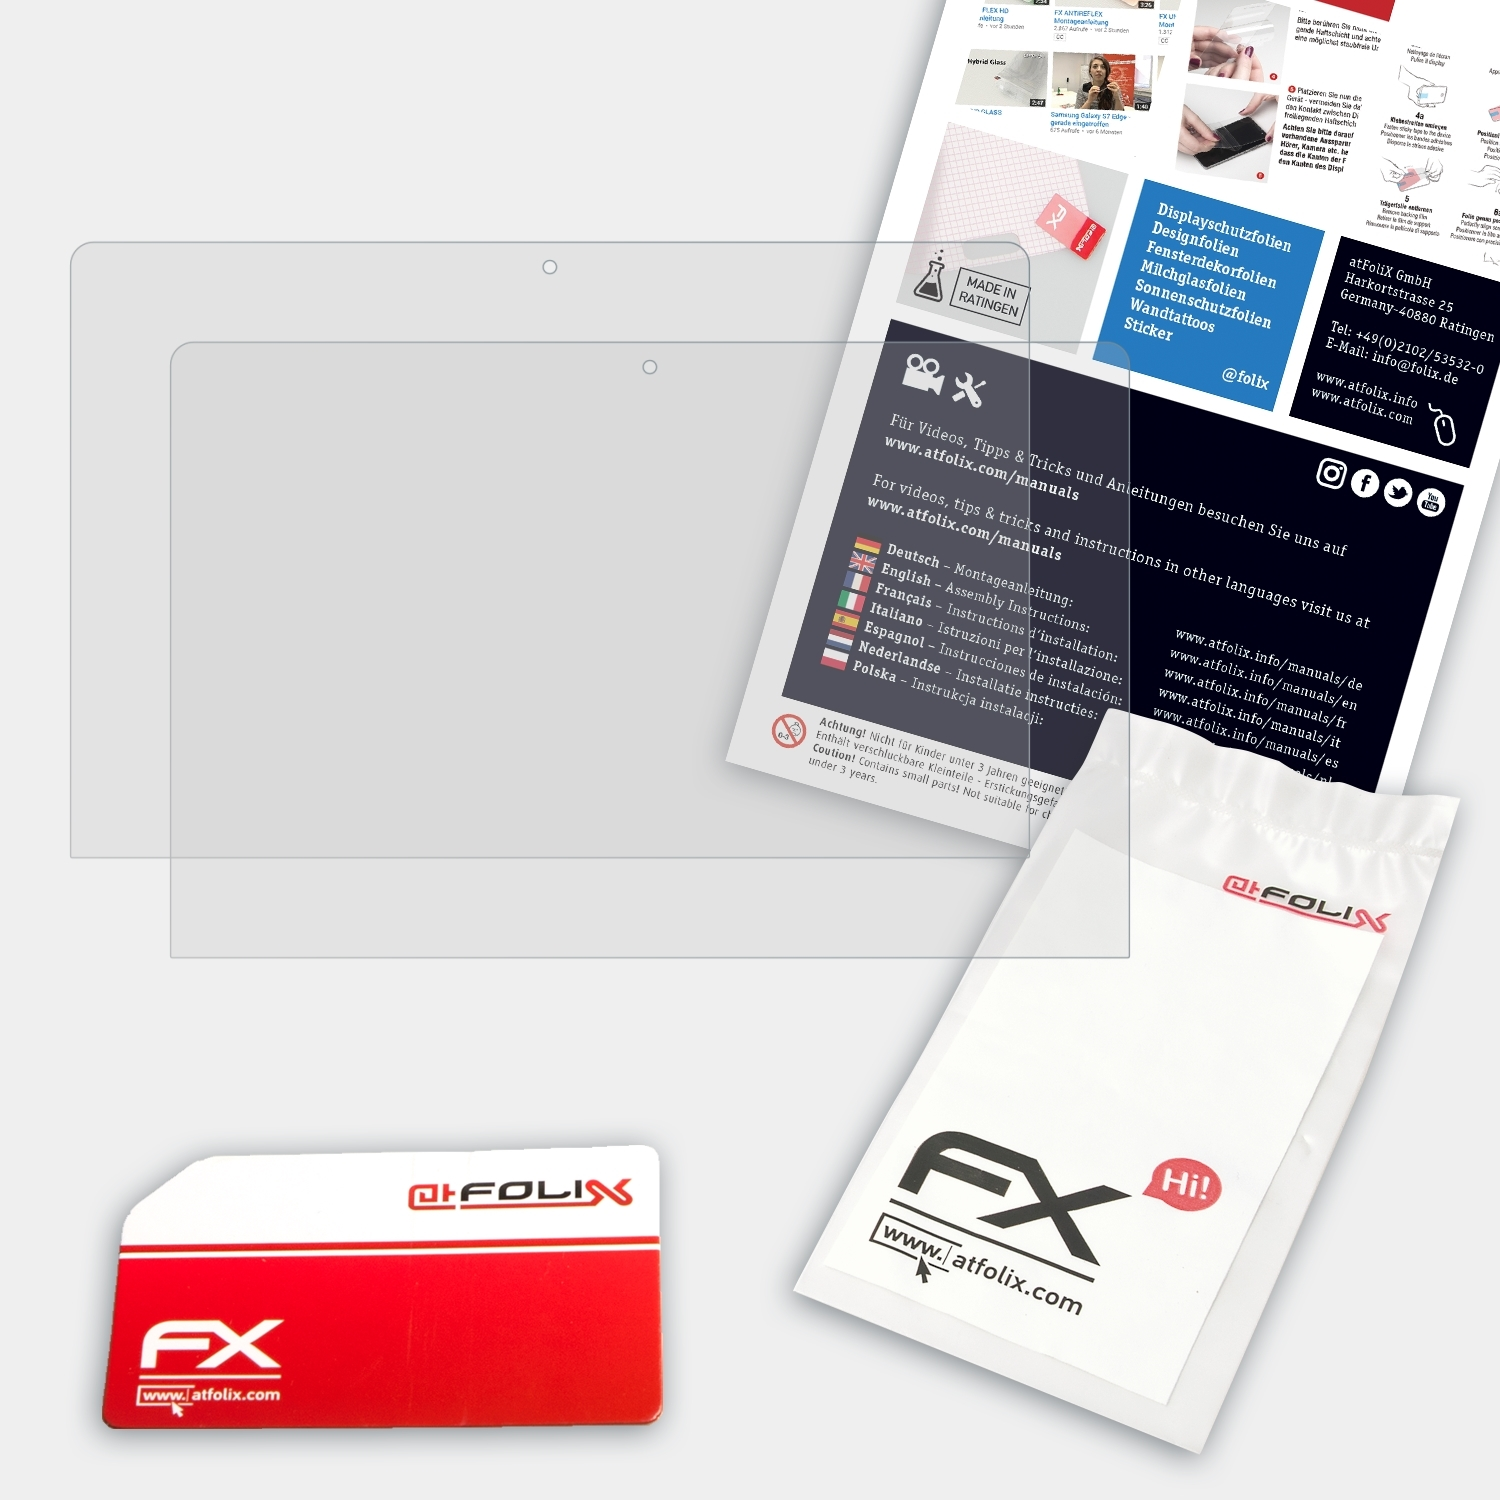 ATFOLIX 2x 700 (11 inch)) Lenovo Yoga FX-Antireflex Displayschutz(für